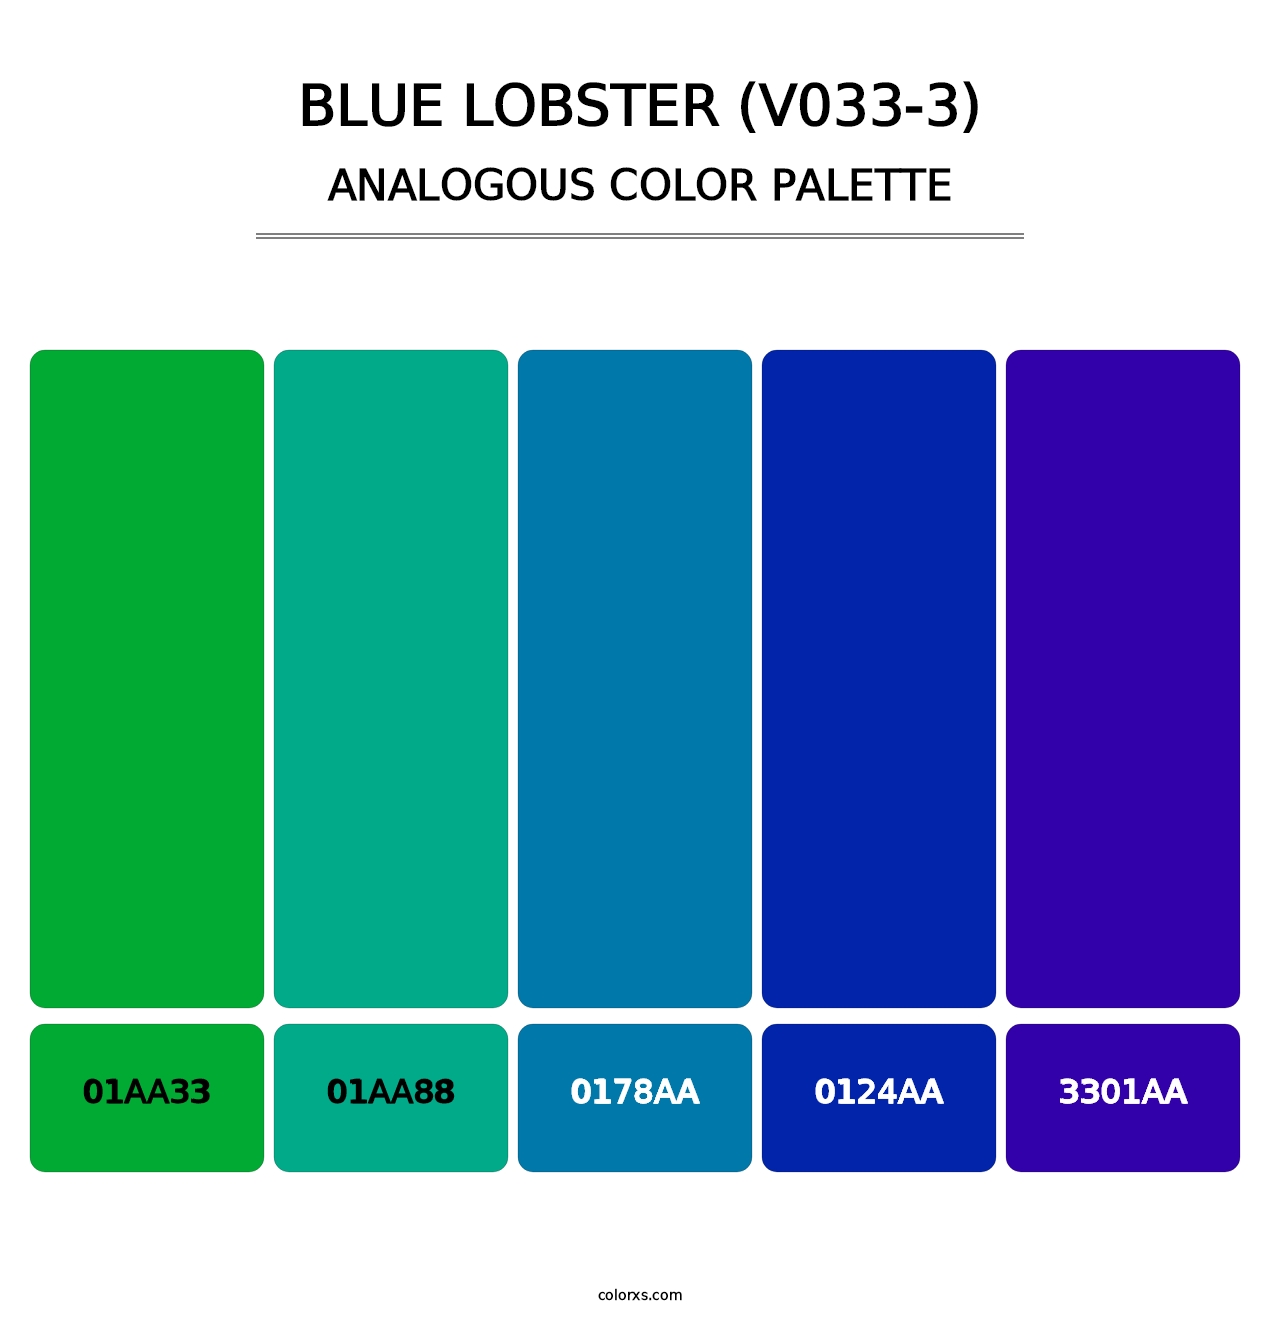 Blue Lobster (V033-3) - Analogous Color Palette